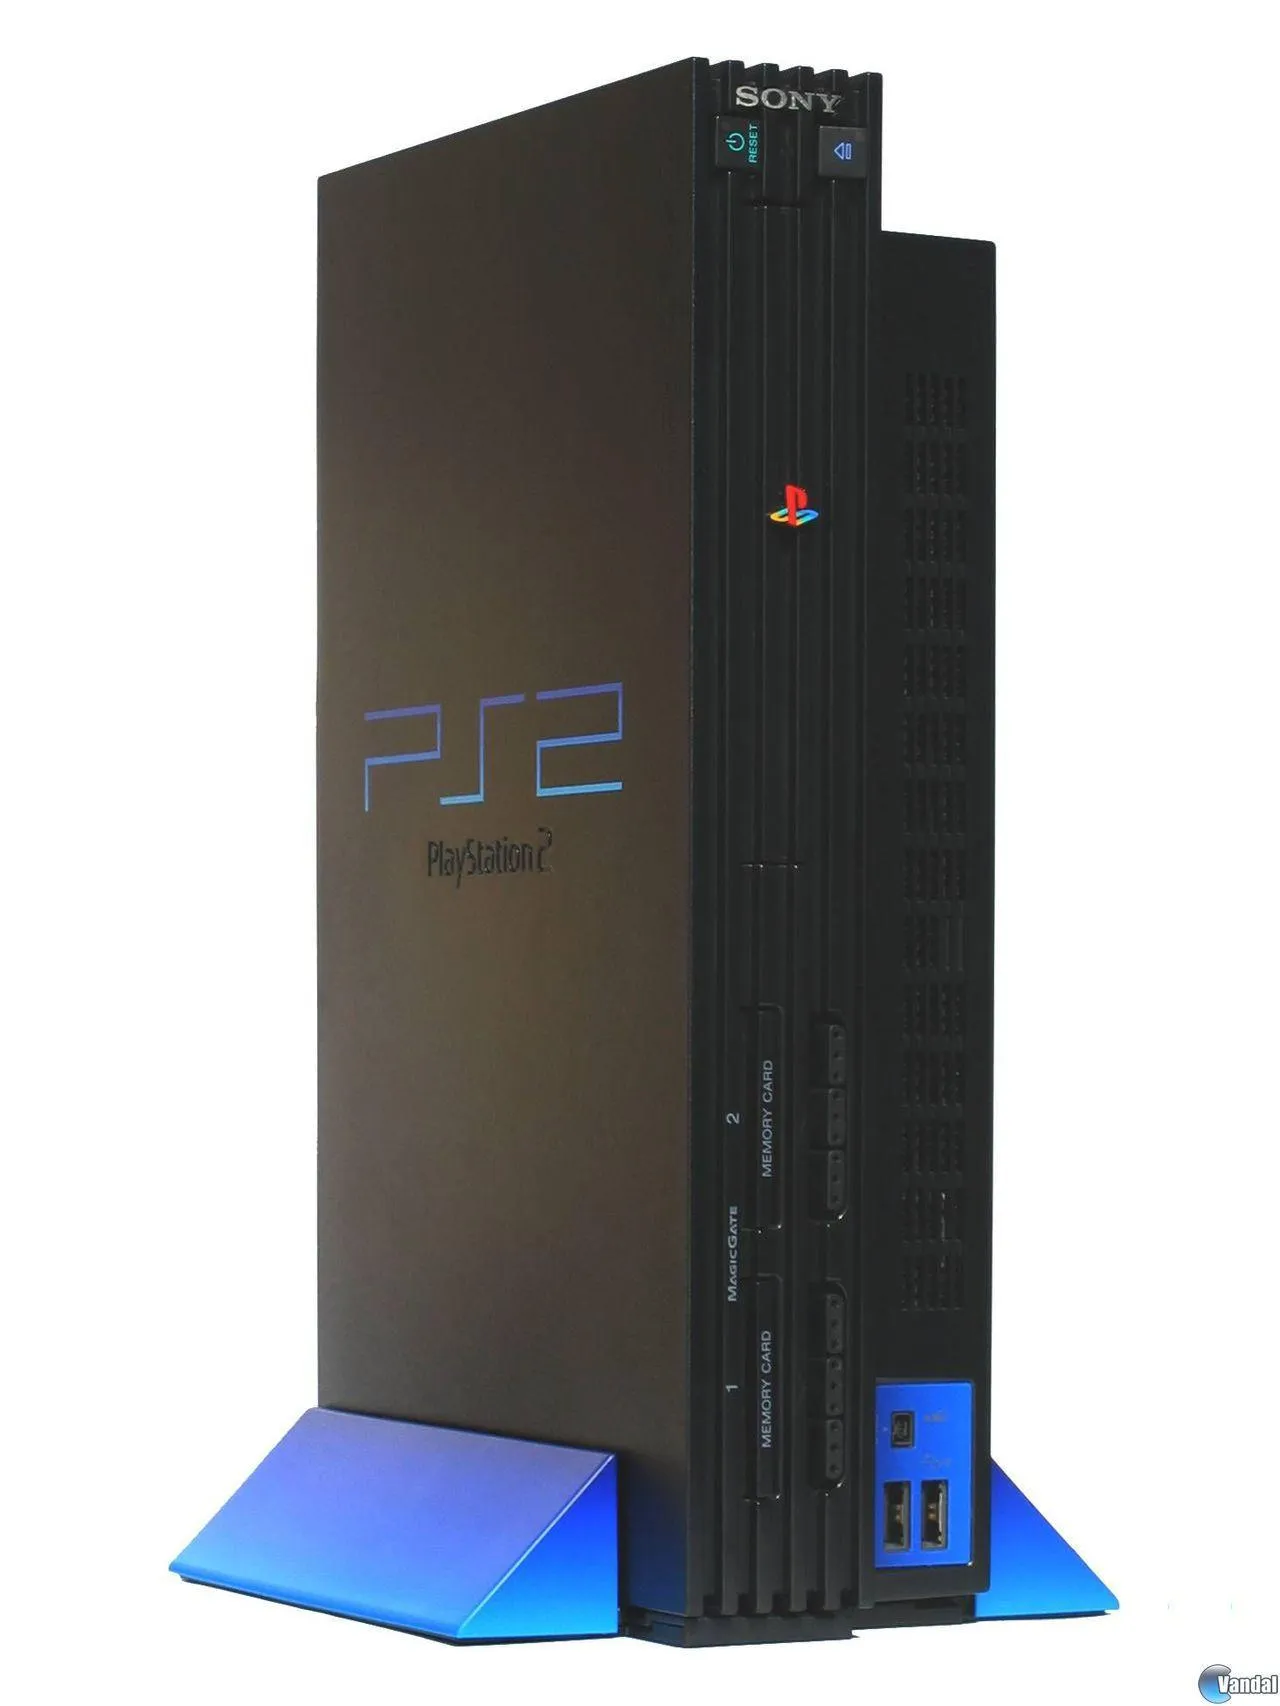 PlayStation 2 continúa siendo la consola más jugada